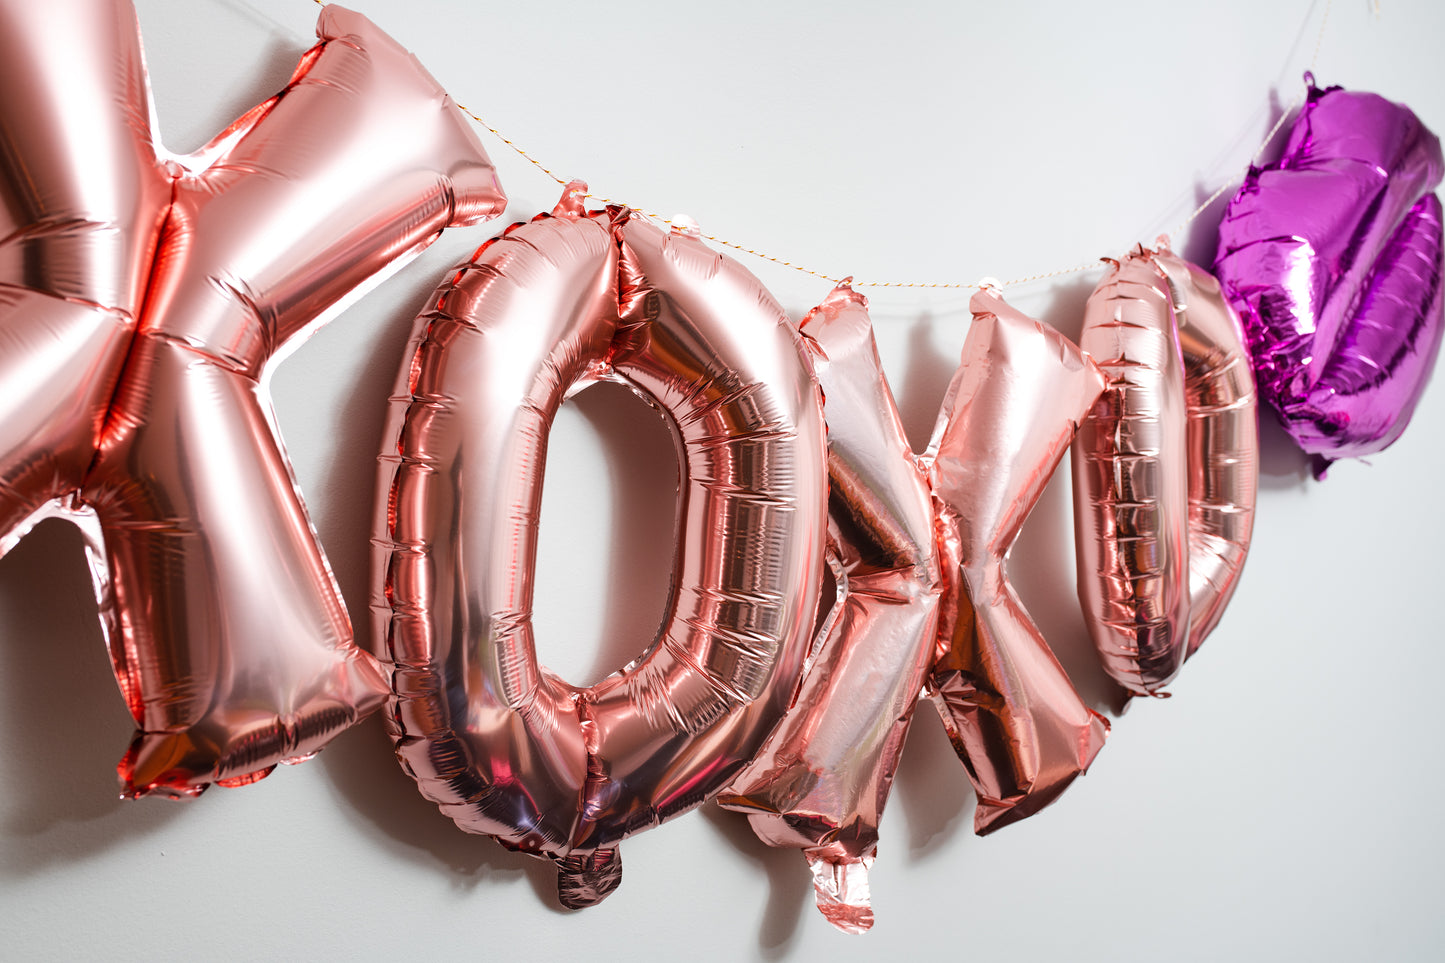 XOXO Foil Balloon Phrase Banner